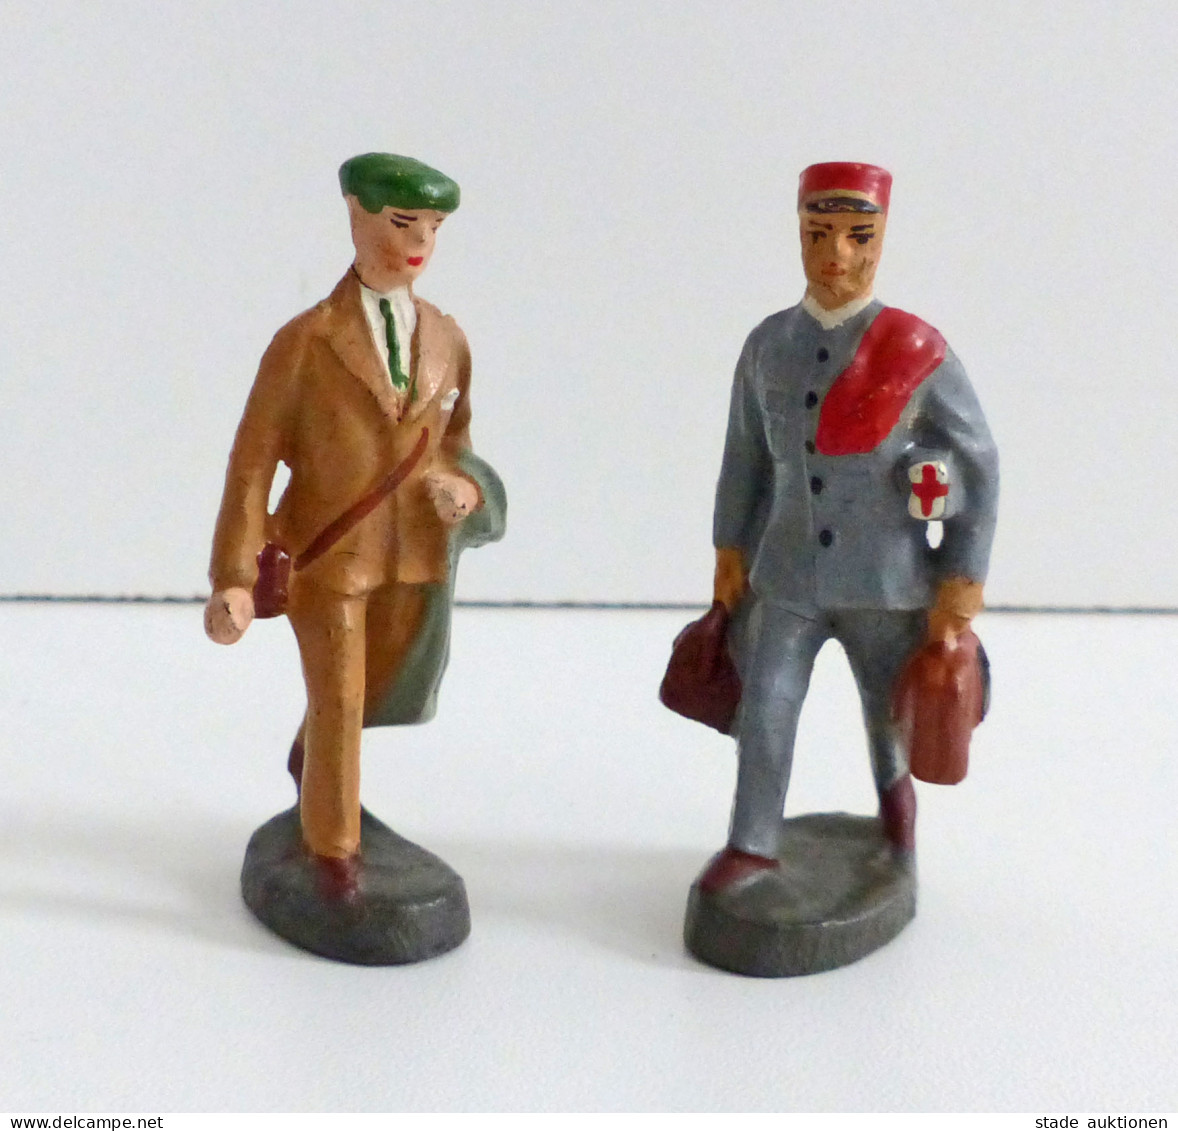 Spielzeug Elastolin 2 Figuren Sanitäter Und Tourist Aus Den 1930er Jahren Ca. 6cm Hoch I-II Jouet - Games & Toys